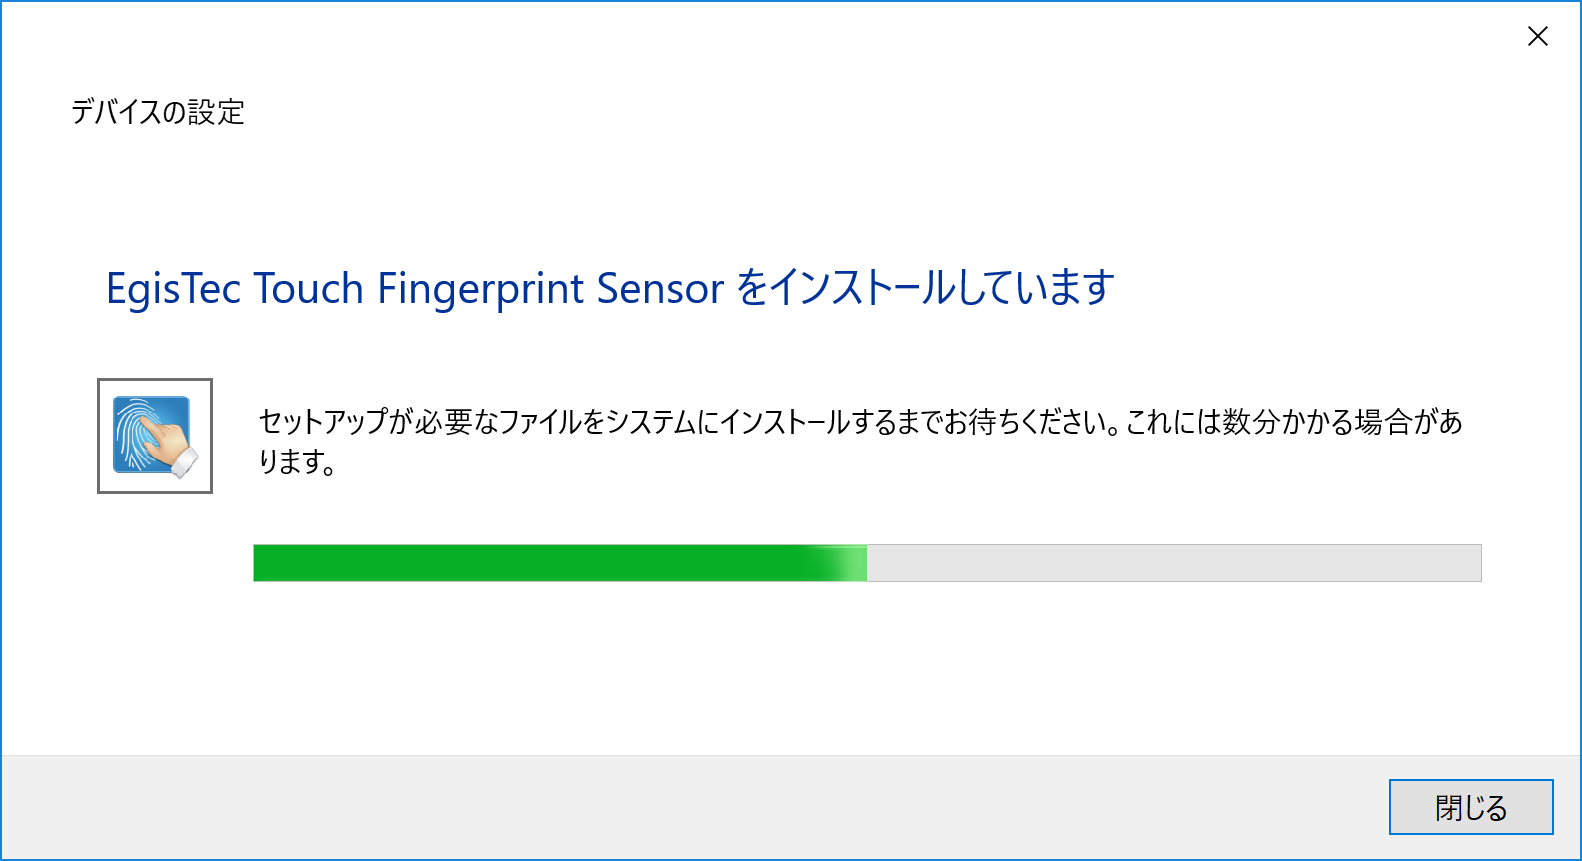 Egistec Touch Fingerprint Sensor Driver